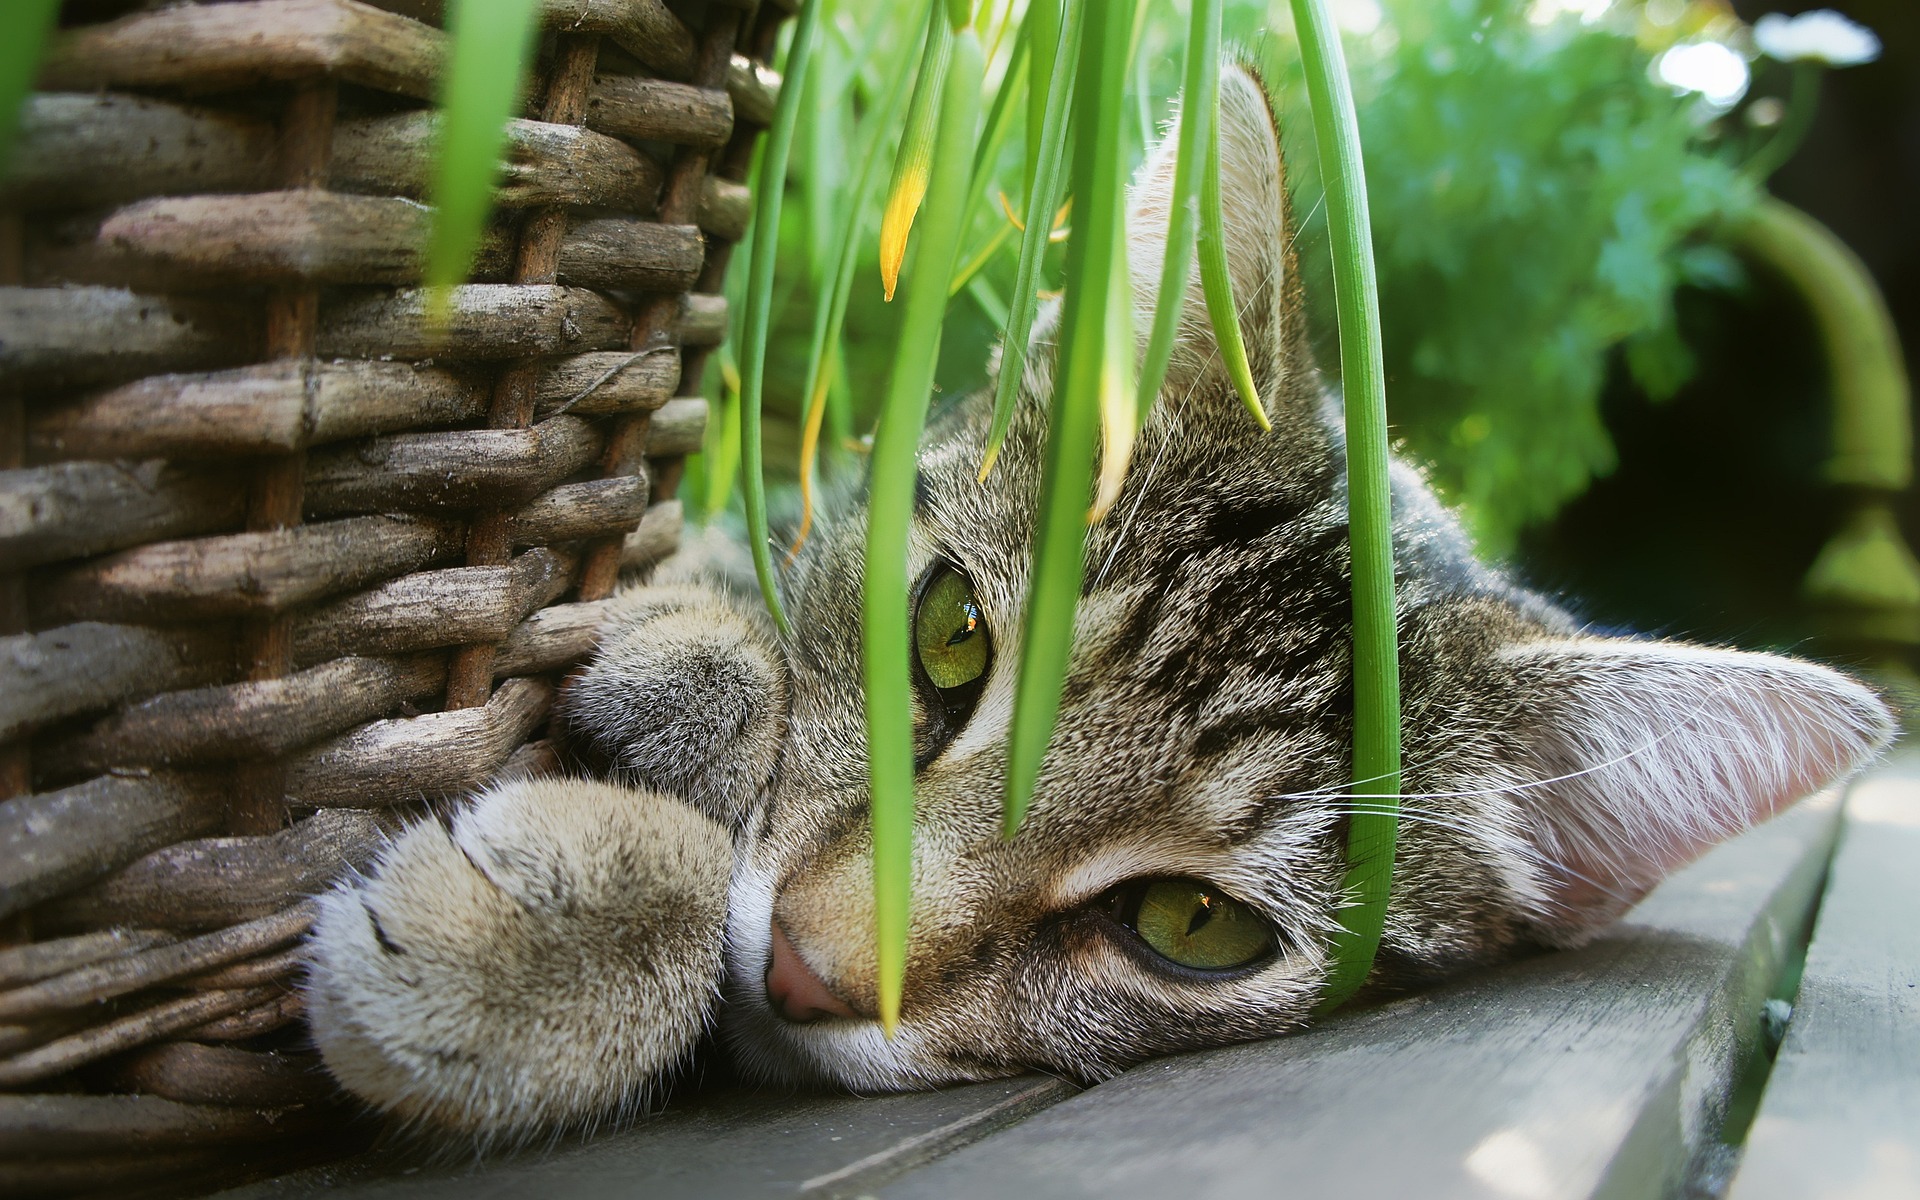 Jardinière d'herbe à chat, boîte de plantation pratique for plante